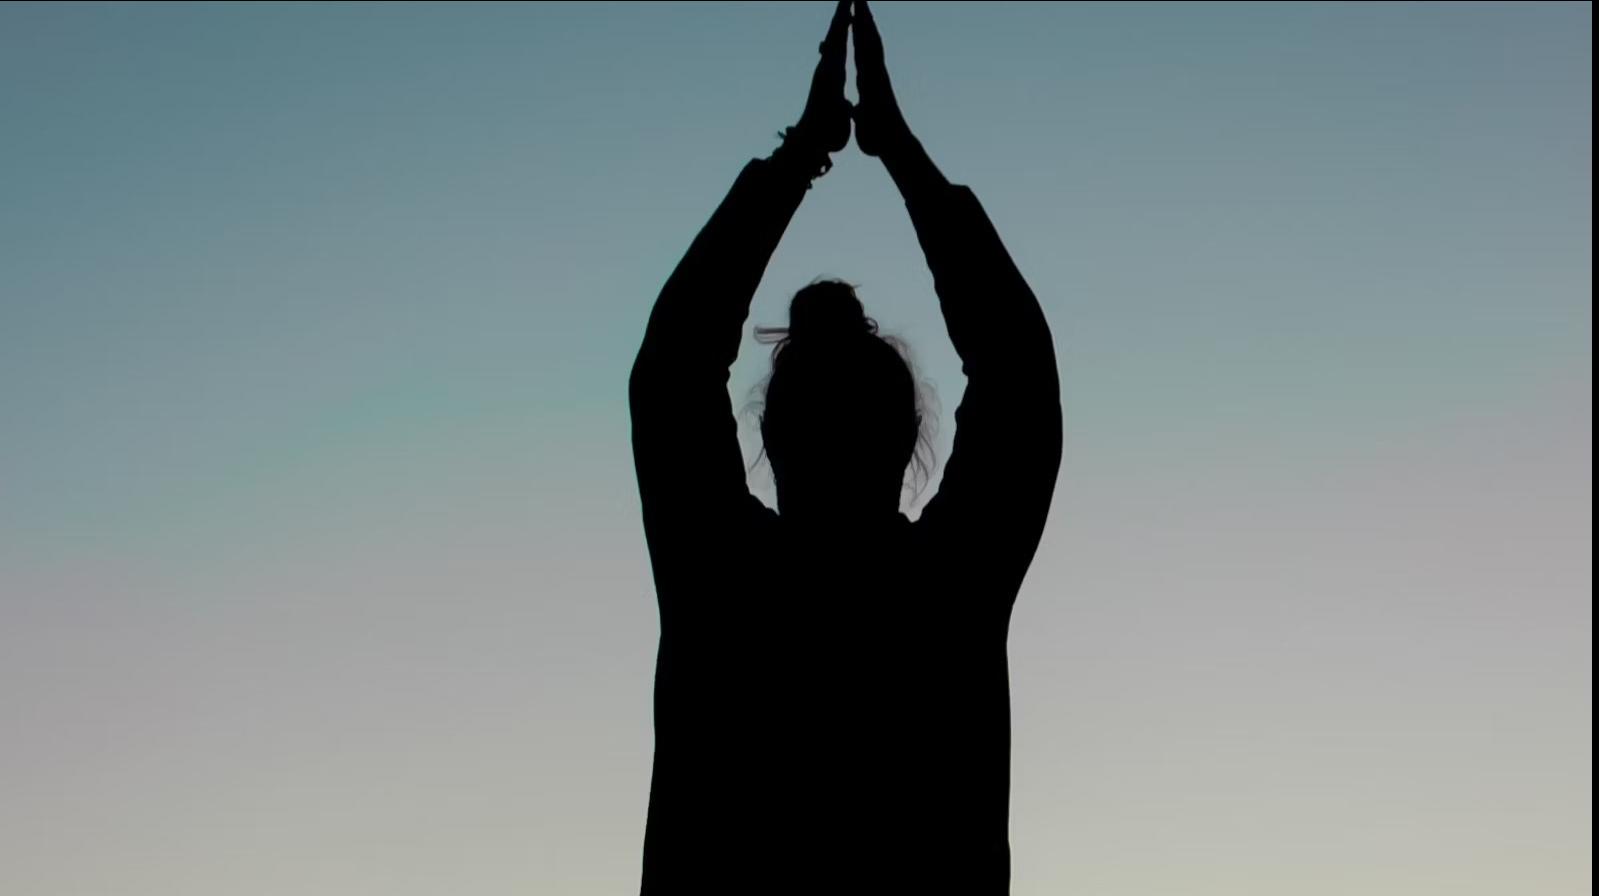 Silhouette d’une personne en position de yoga, vue à contre-jour